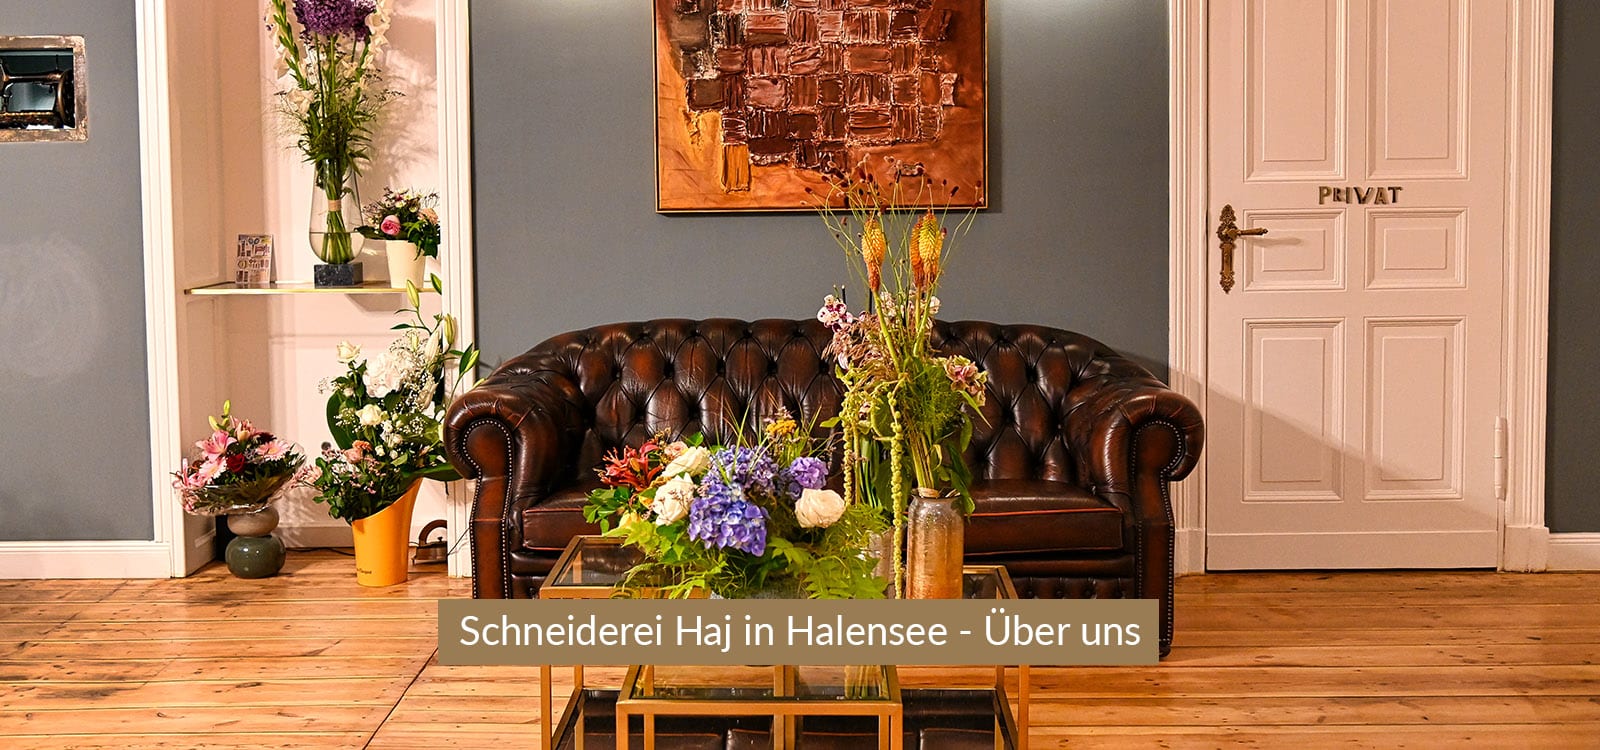 schneiderei-halensee-header-desktop-1600x750-ueber-uns-v2